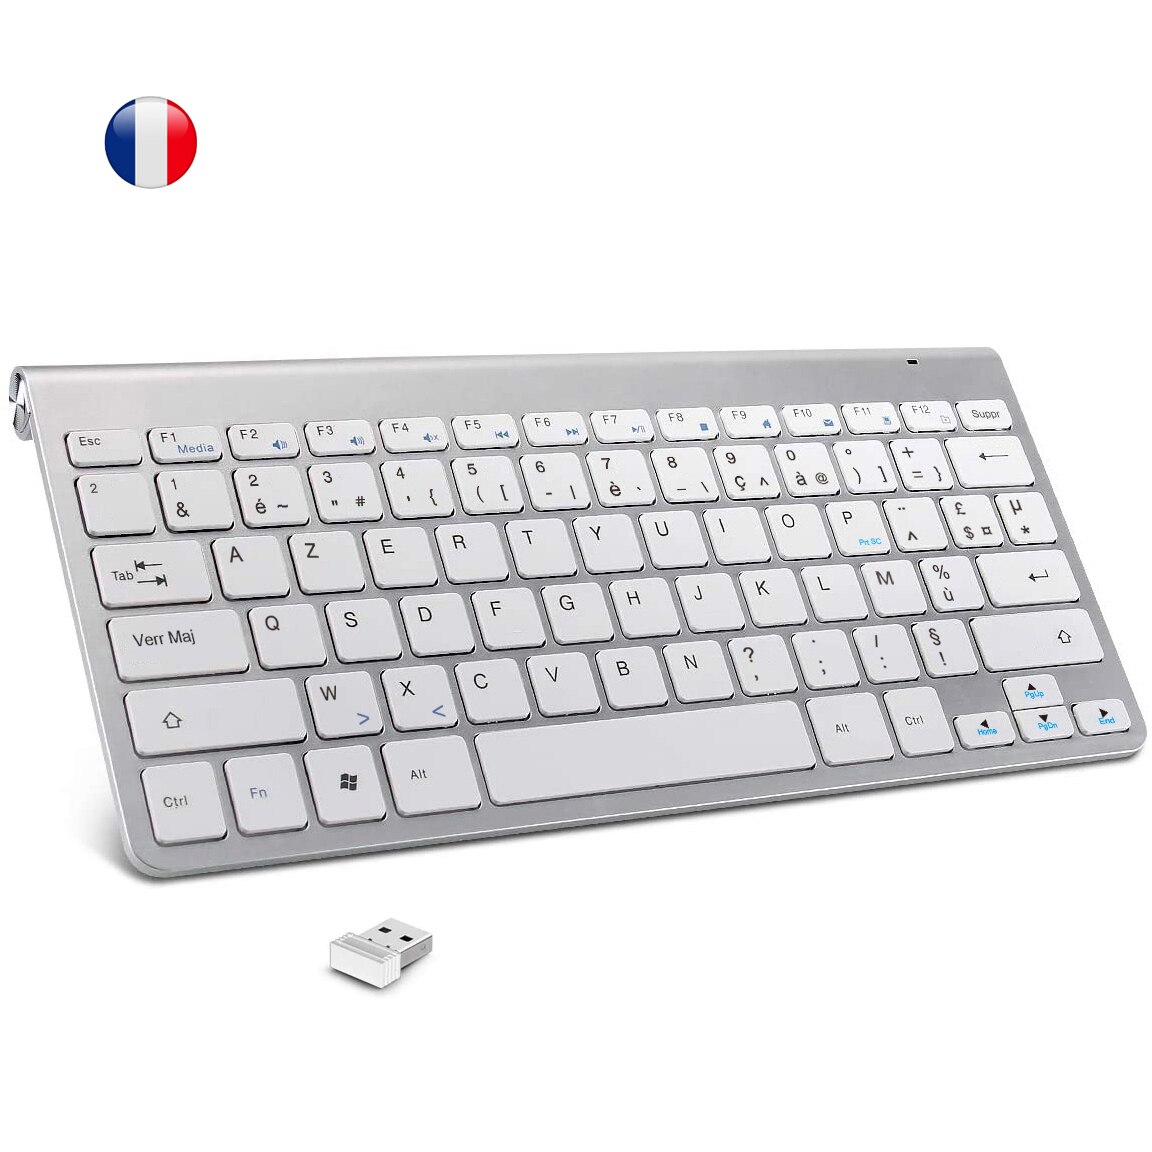 2.4G Franse Wireless Keyboard Ultra Slim Azerty Layout Multimedia Toetsenbord Geluidsarm Voor Laptop Desktop Windows Smart Tv